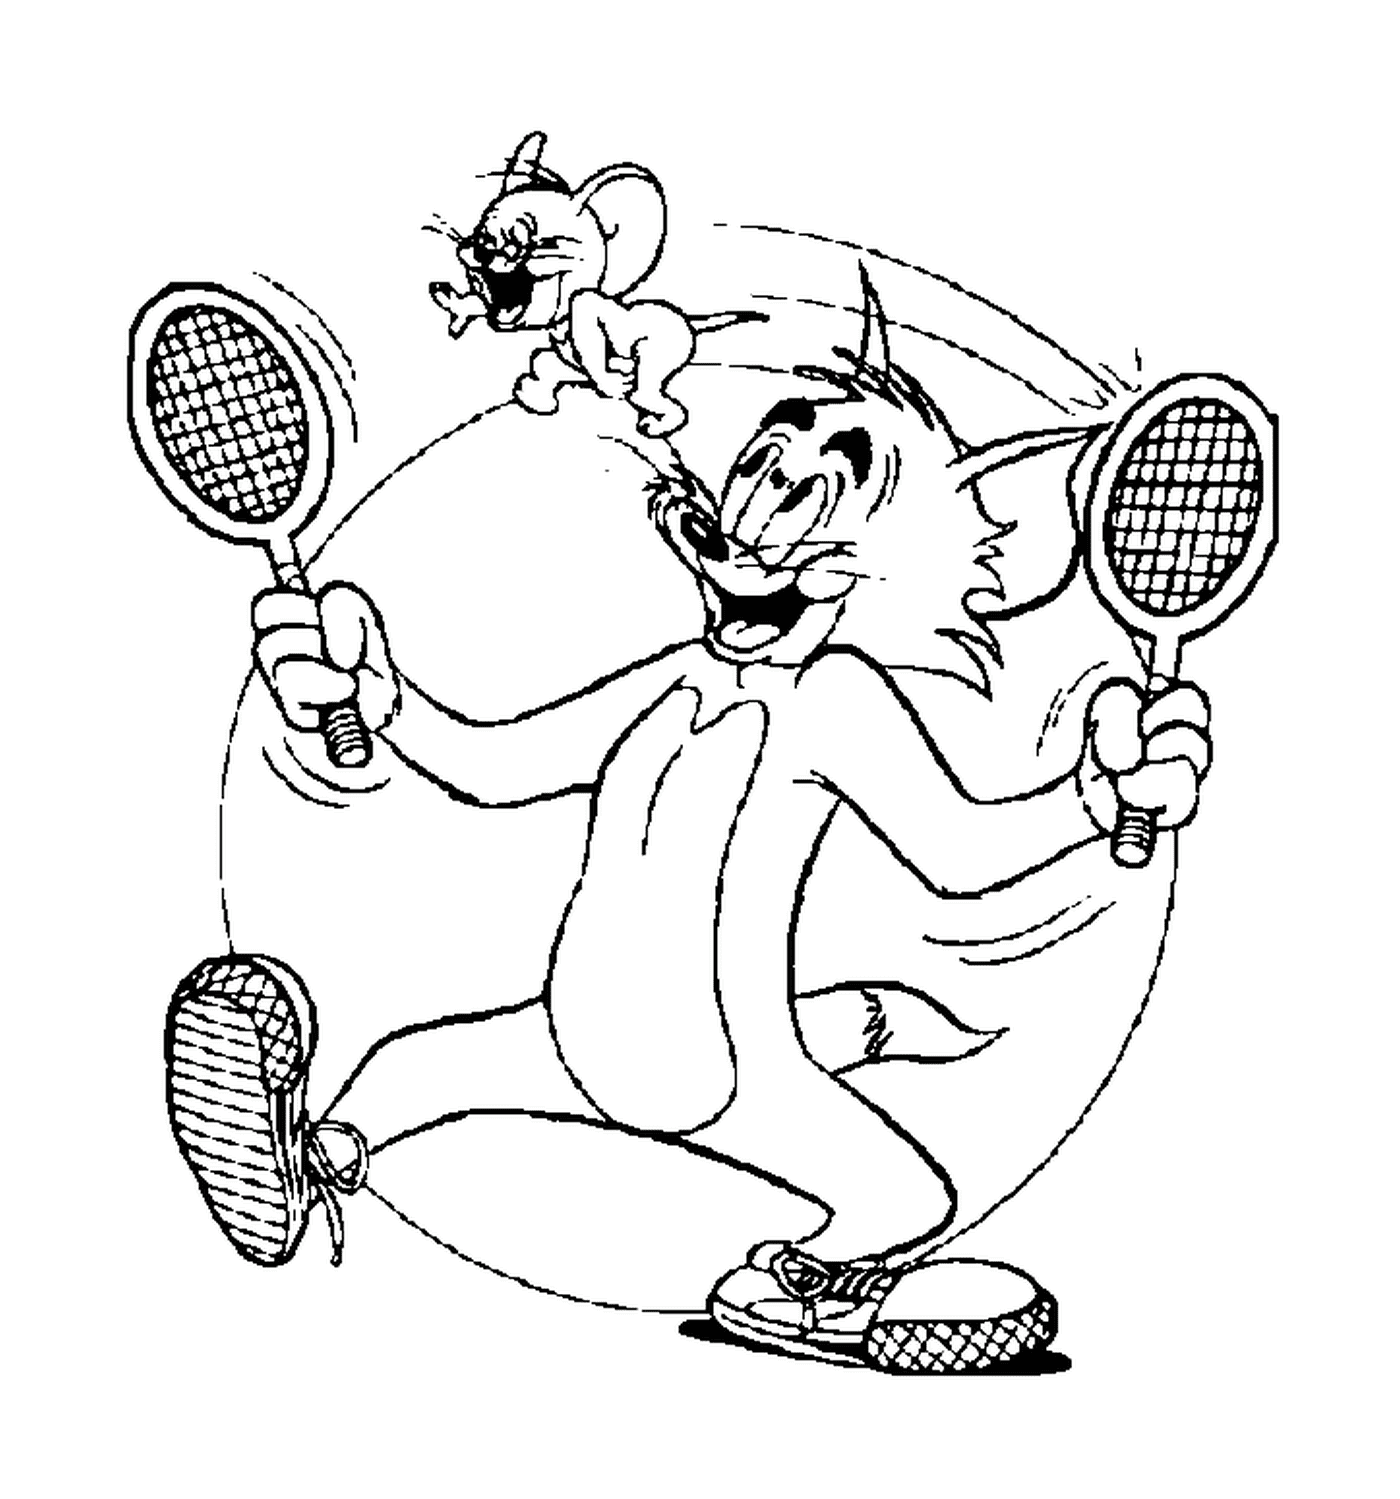  Tom und Jerry spielen Tennis 